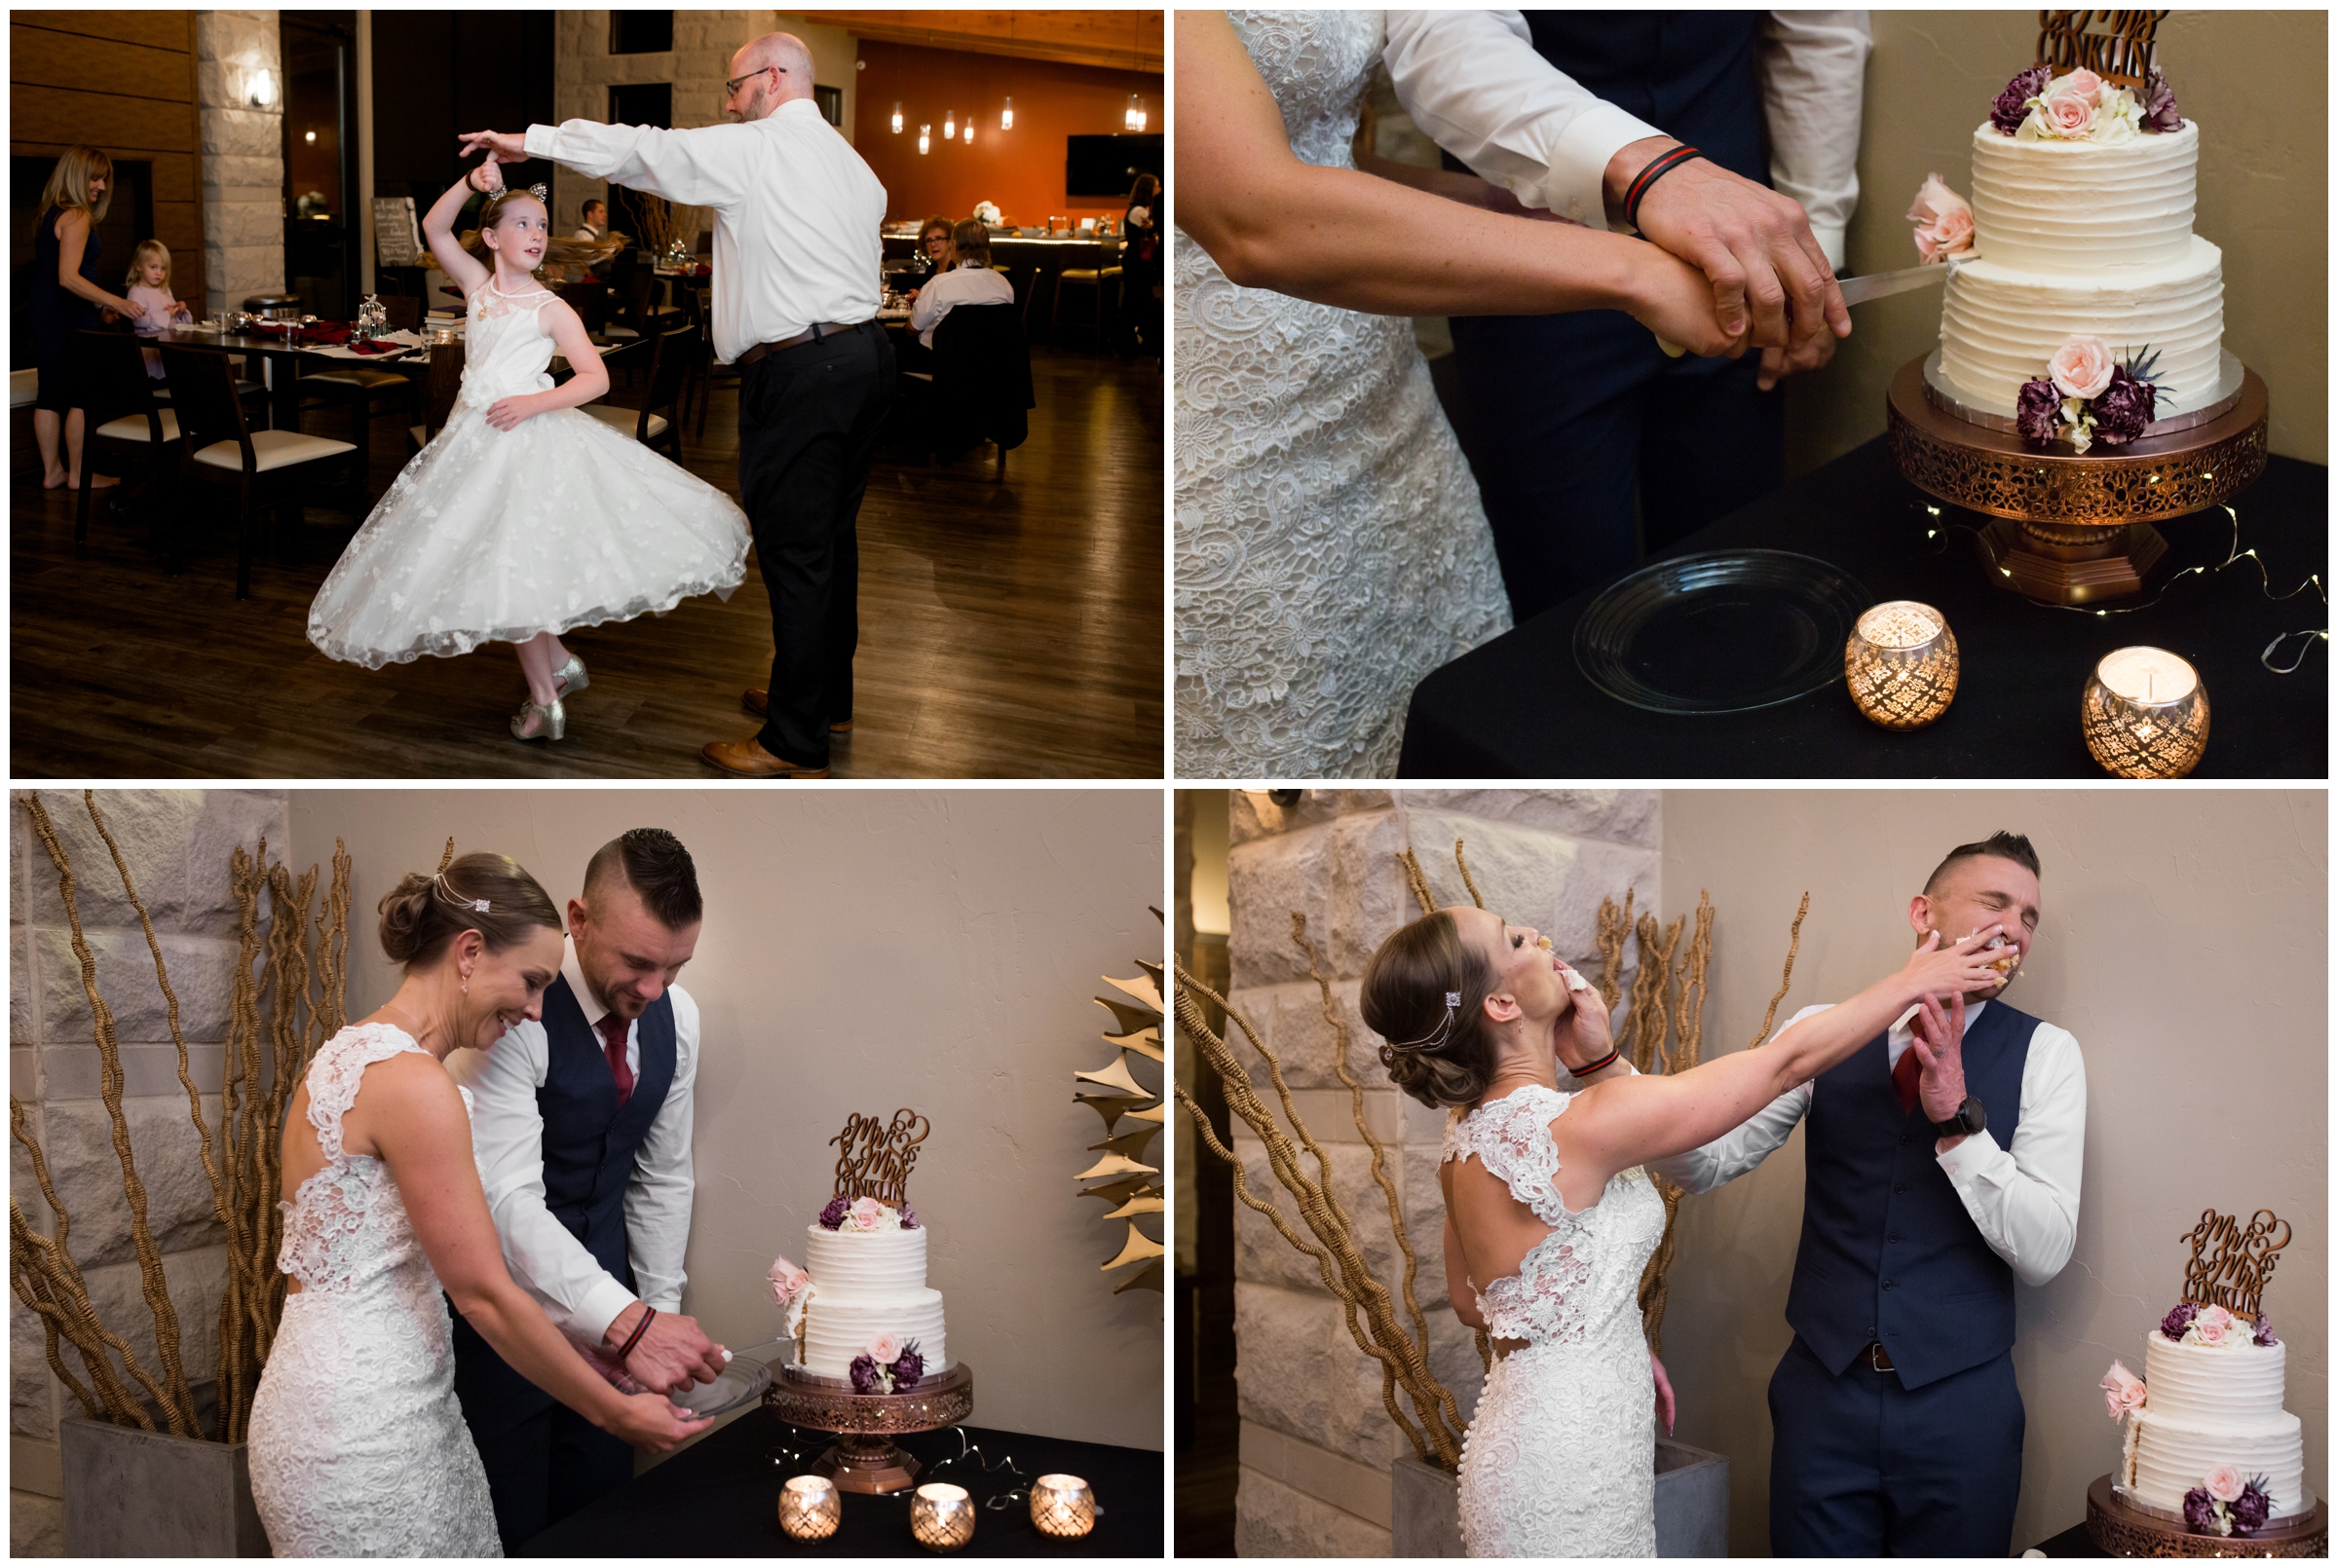 bride and groom smashing cake in faces at Colorado wedding reception 